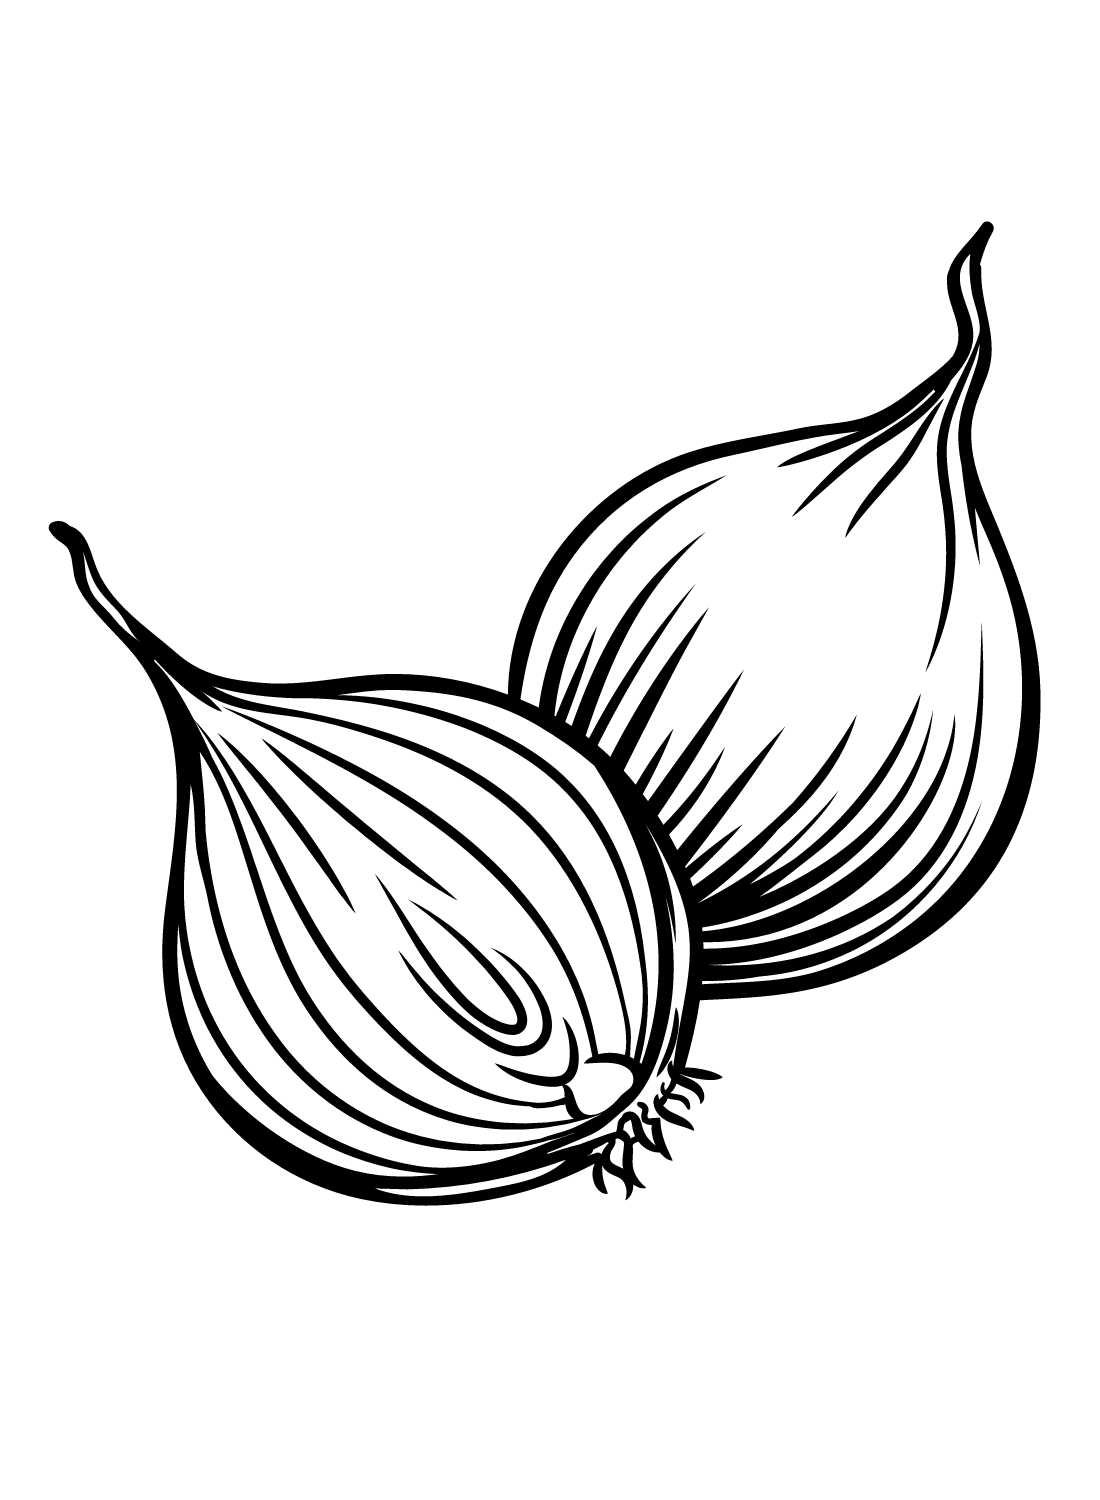 Cipolla da stampare da Onion